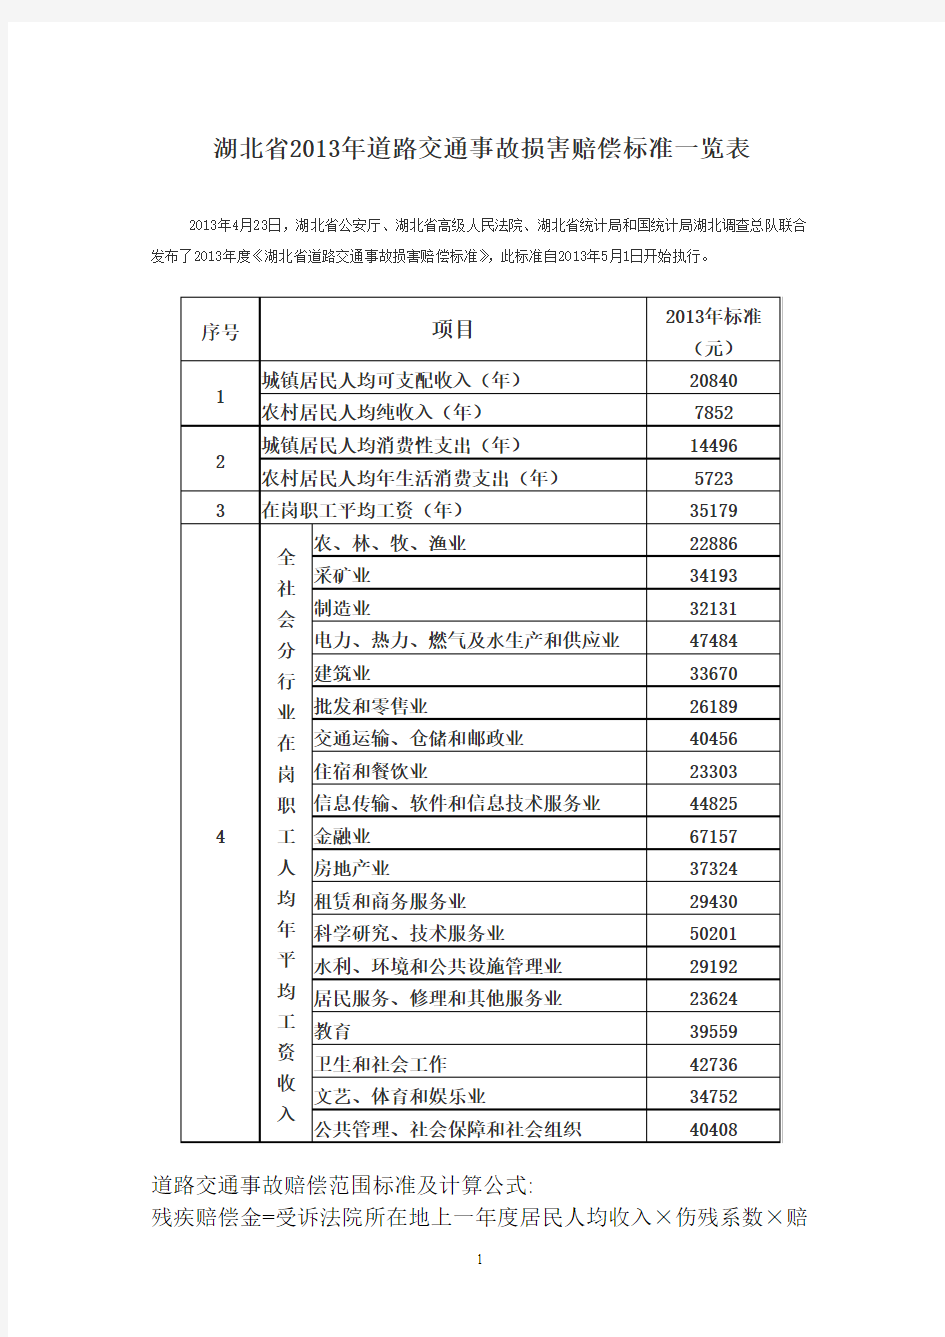 湖北省2013年道路交通事故损害赔偿范围标准及计算公式